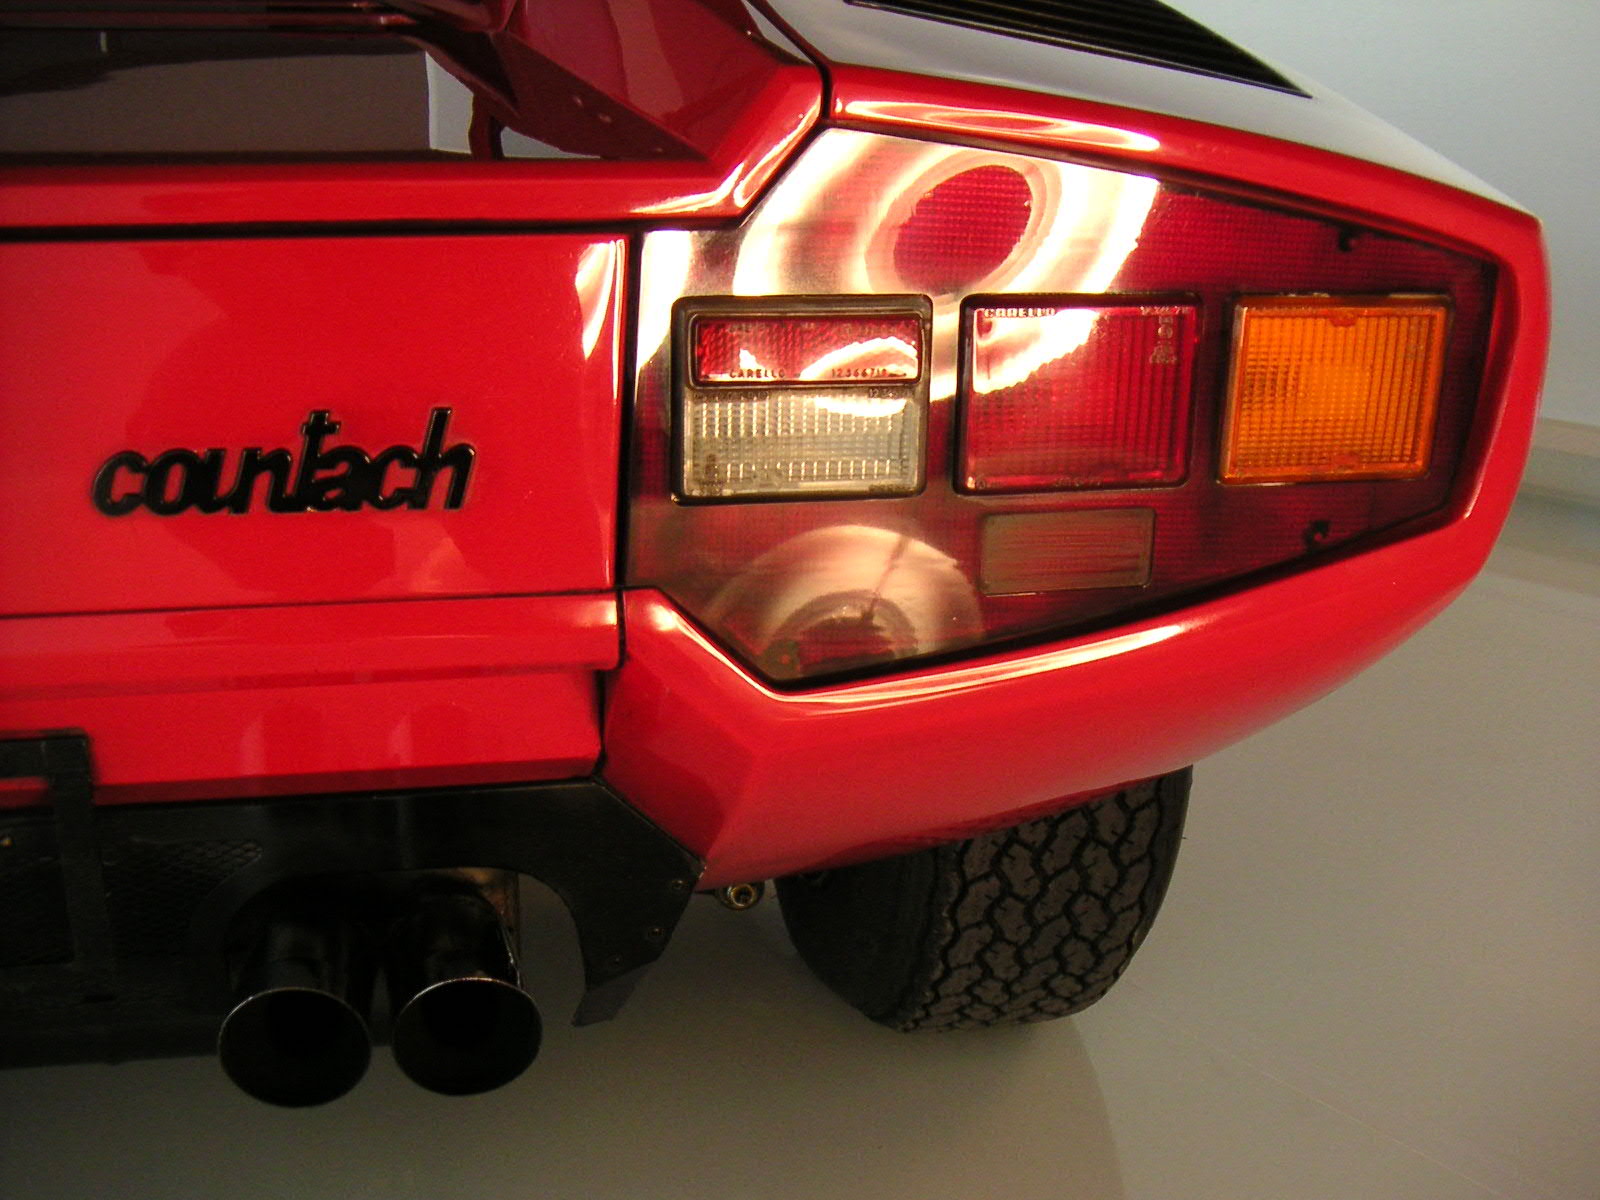 Lamborghini Countach von 1975 in der Autostadt Wolfsburg, Stadtbrücke